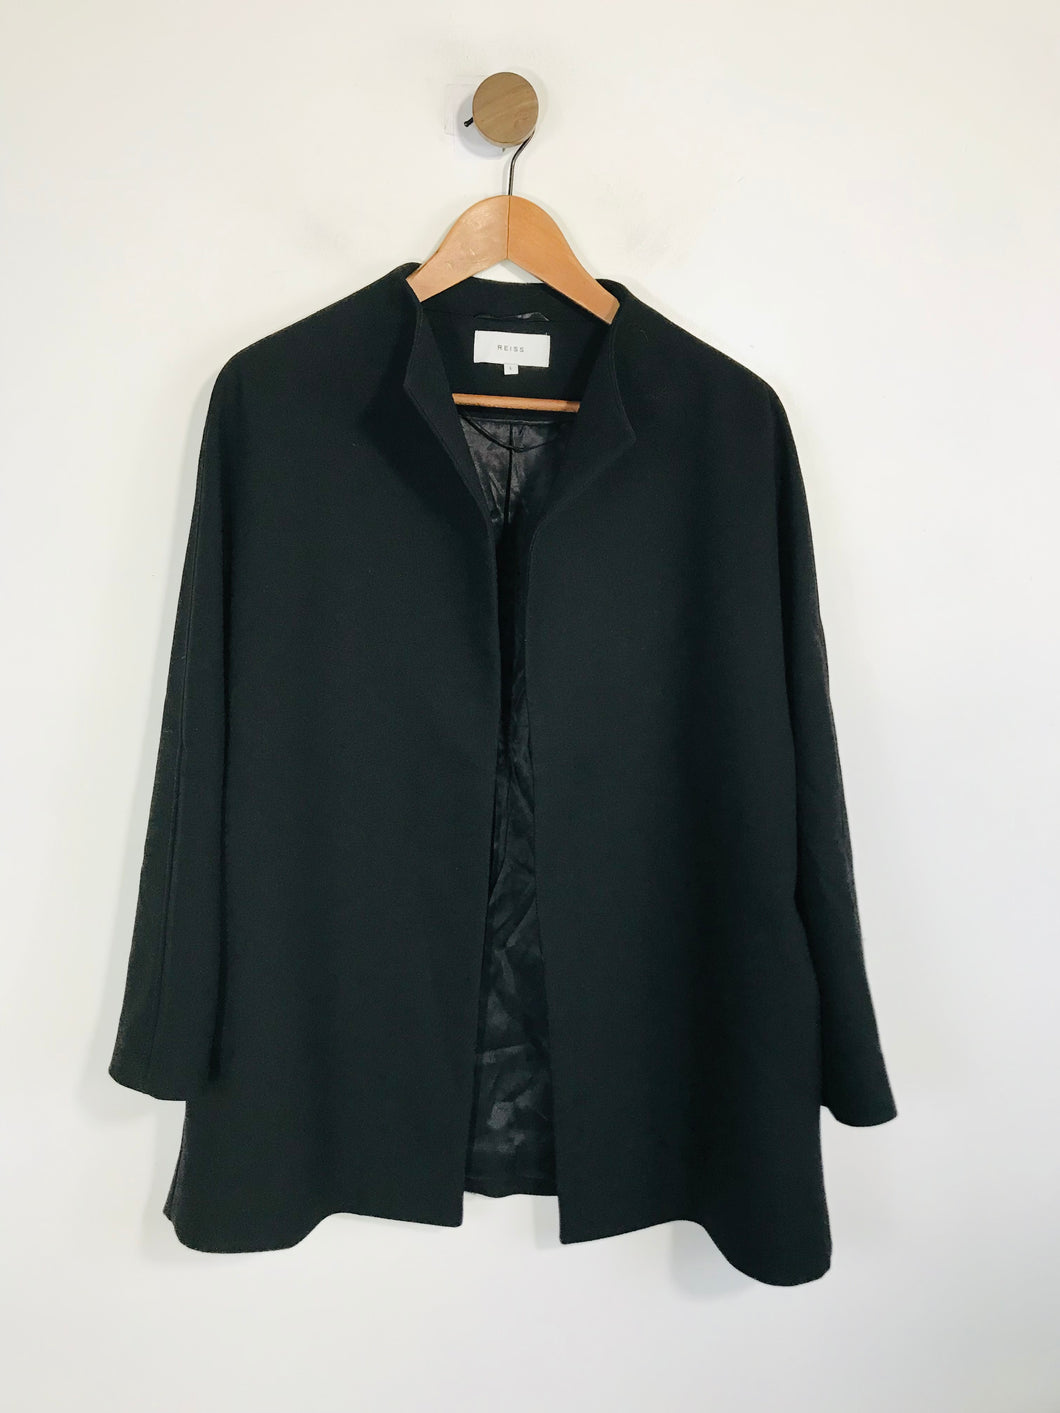 Reiss Women's Smart Overcoat Coat | L UK14 | Black